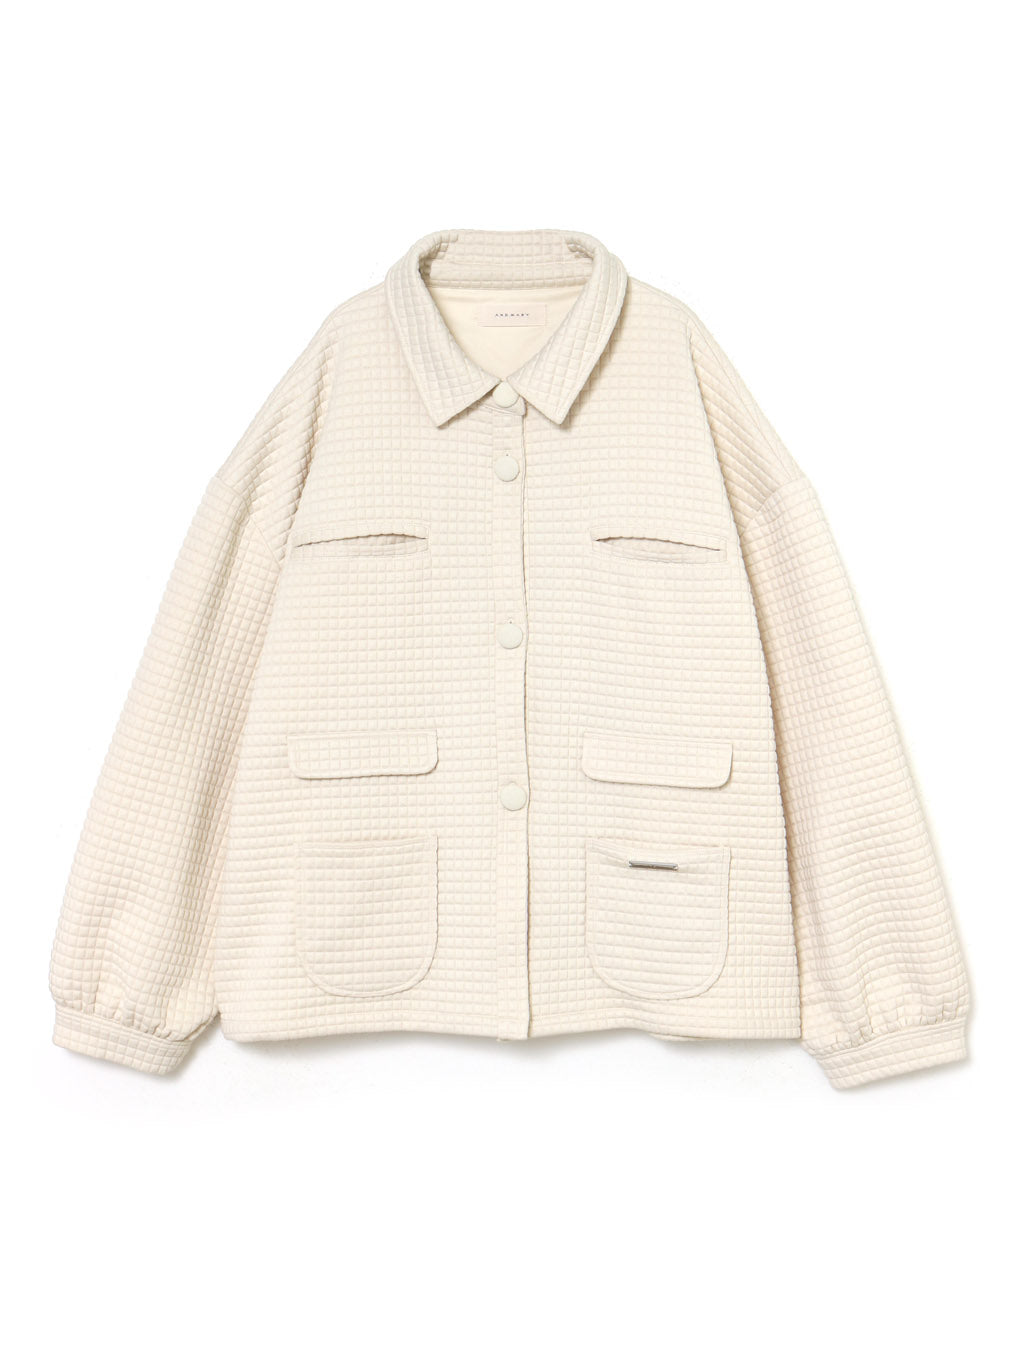 8,750円Ivy loose jacket